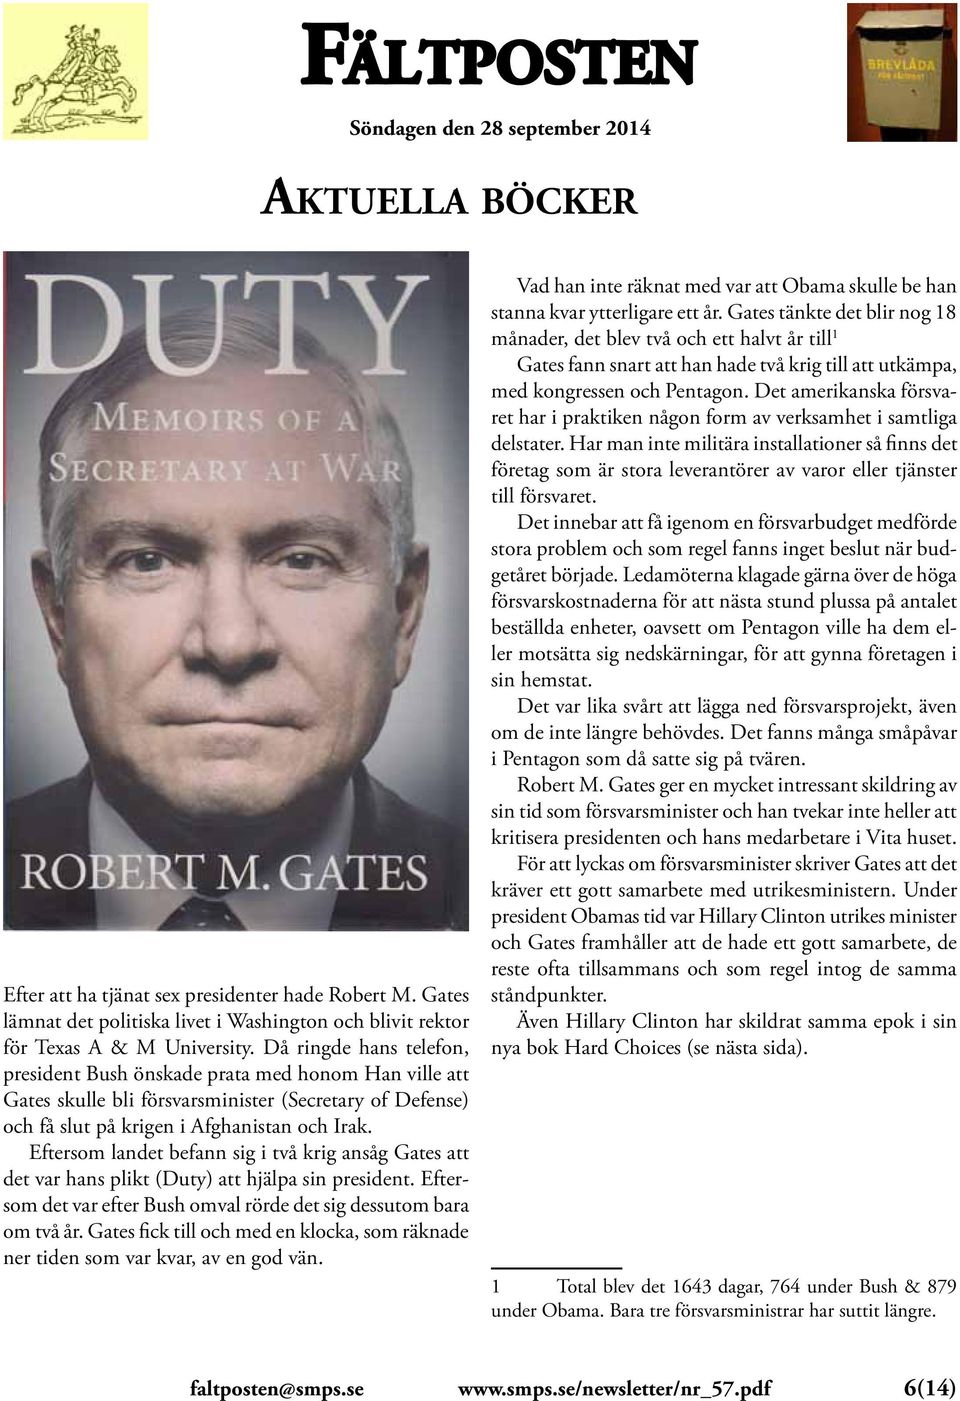 Eftersom landet befann sig i två krig ansåg Gates att det var hans plikt (Duty) att hjälpa sin president. Eftersom det var efter Bush omval rörde det sig dessutom bara om två år.